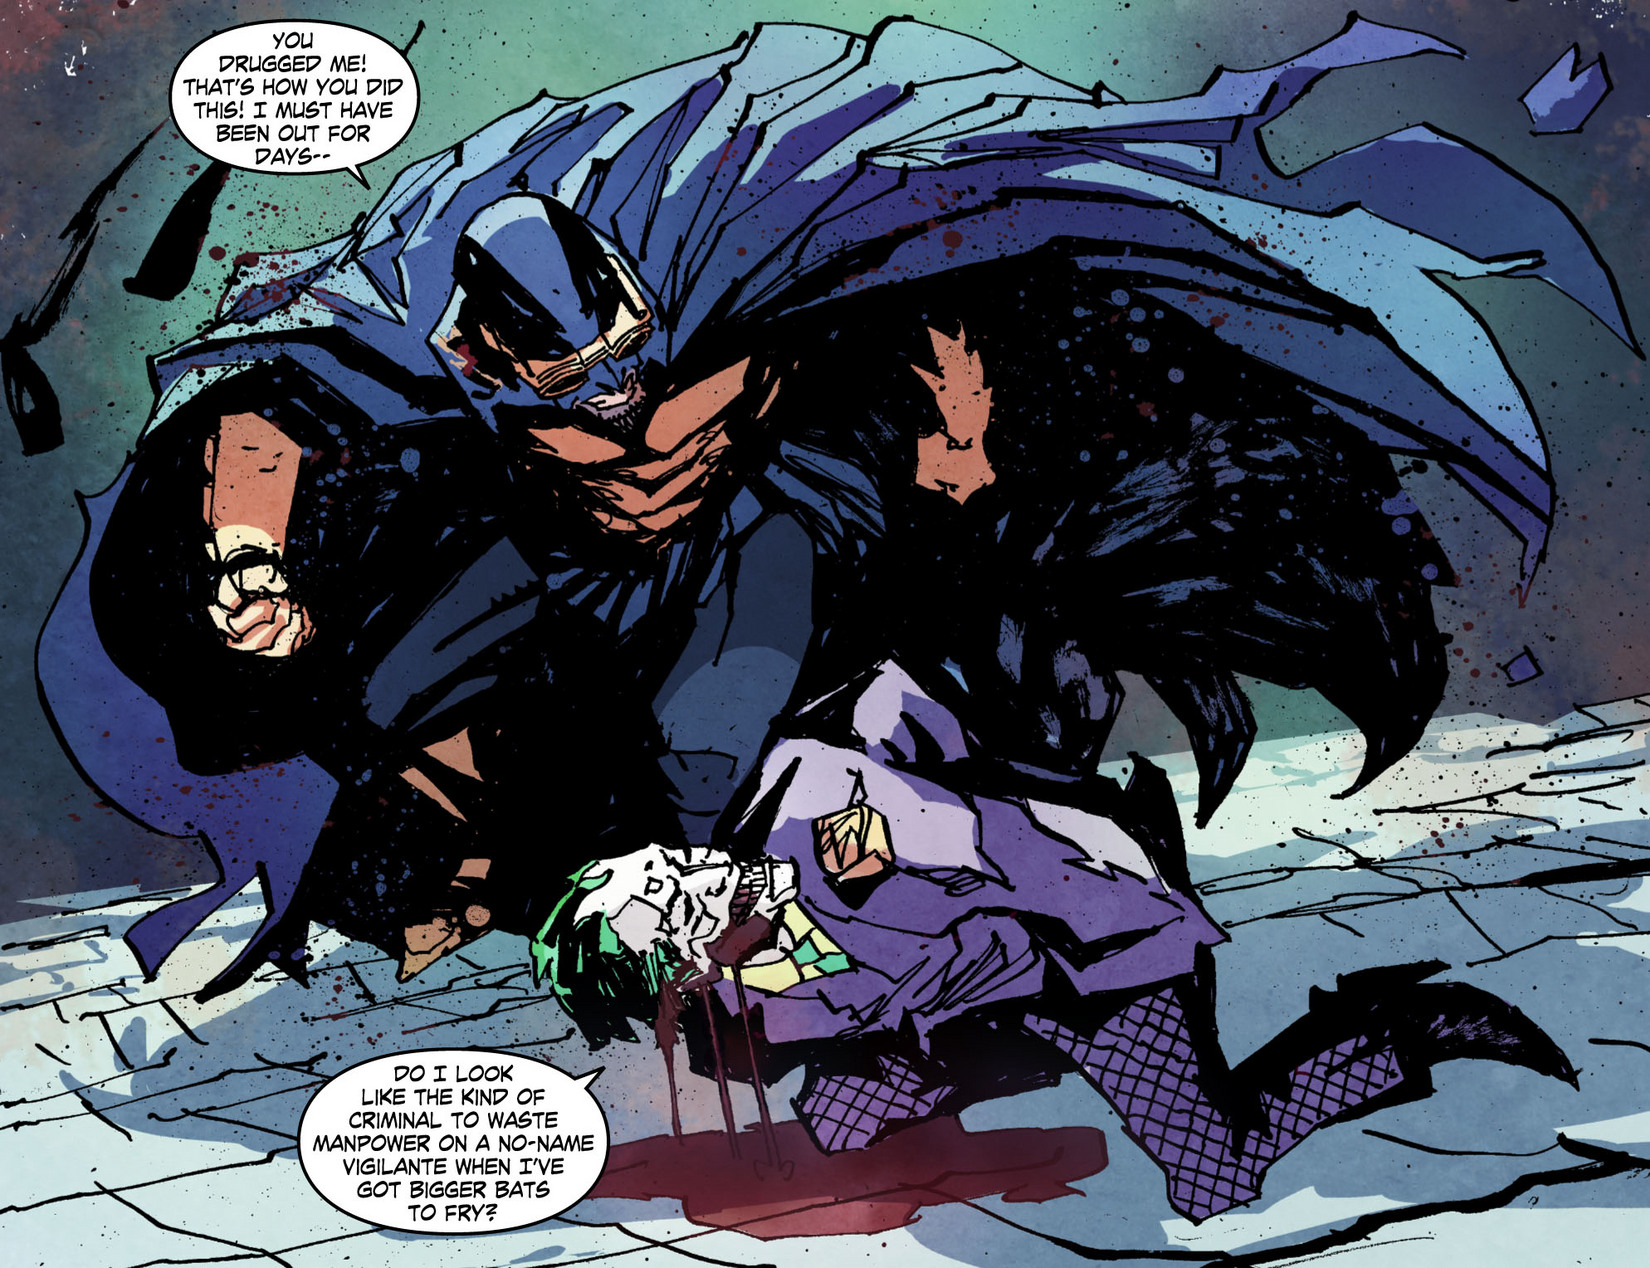 Манга ограниченный временем темный рыцарь 53. Legends of the Dark Knight [i] Comic - Issue #49.